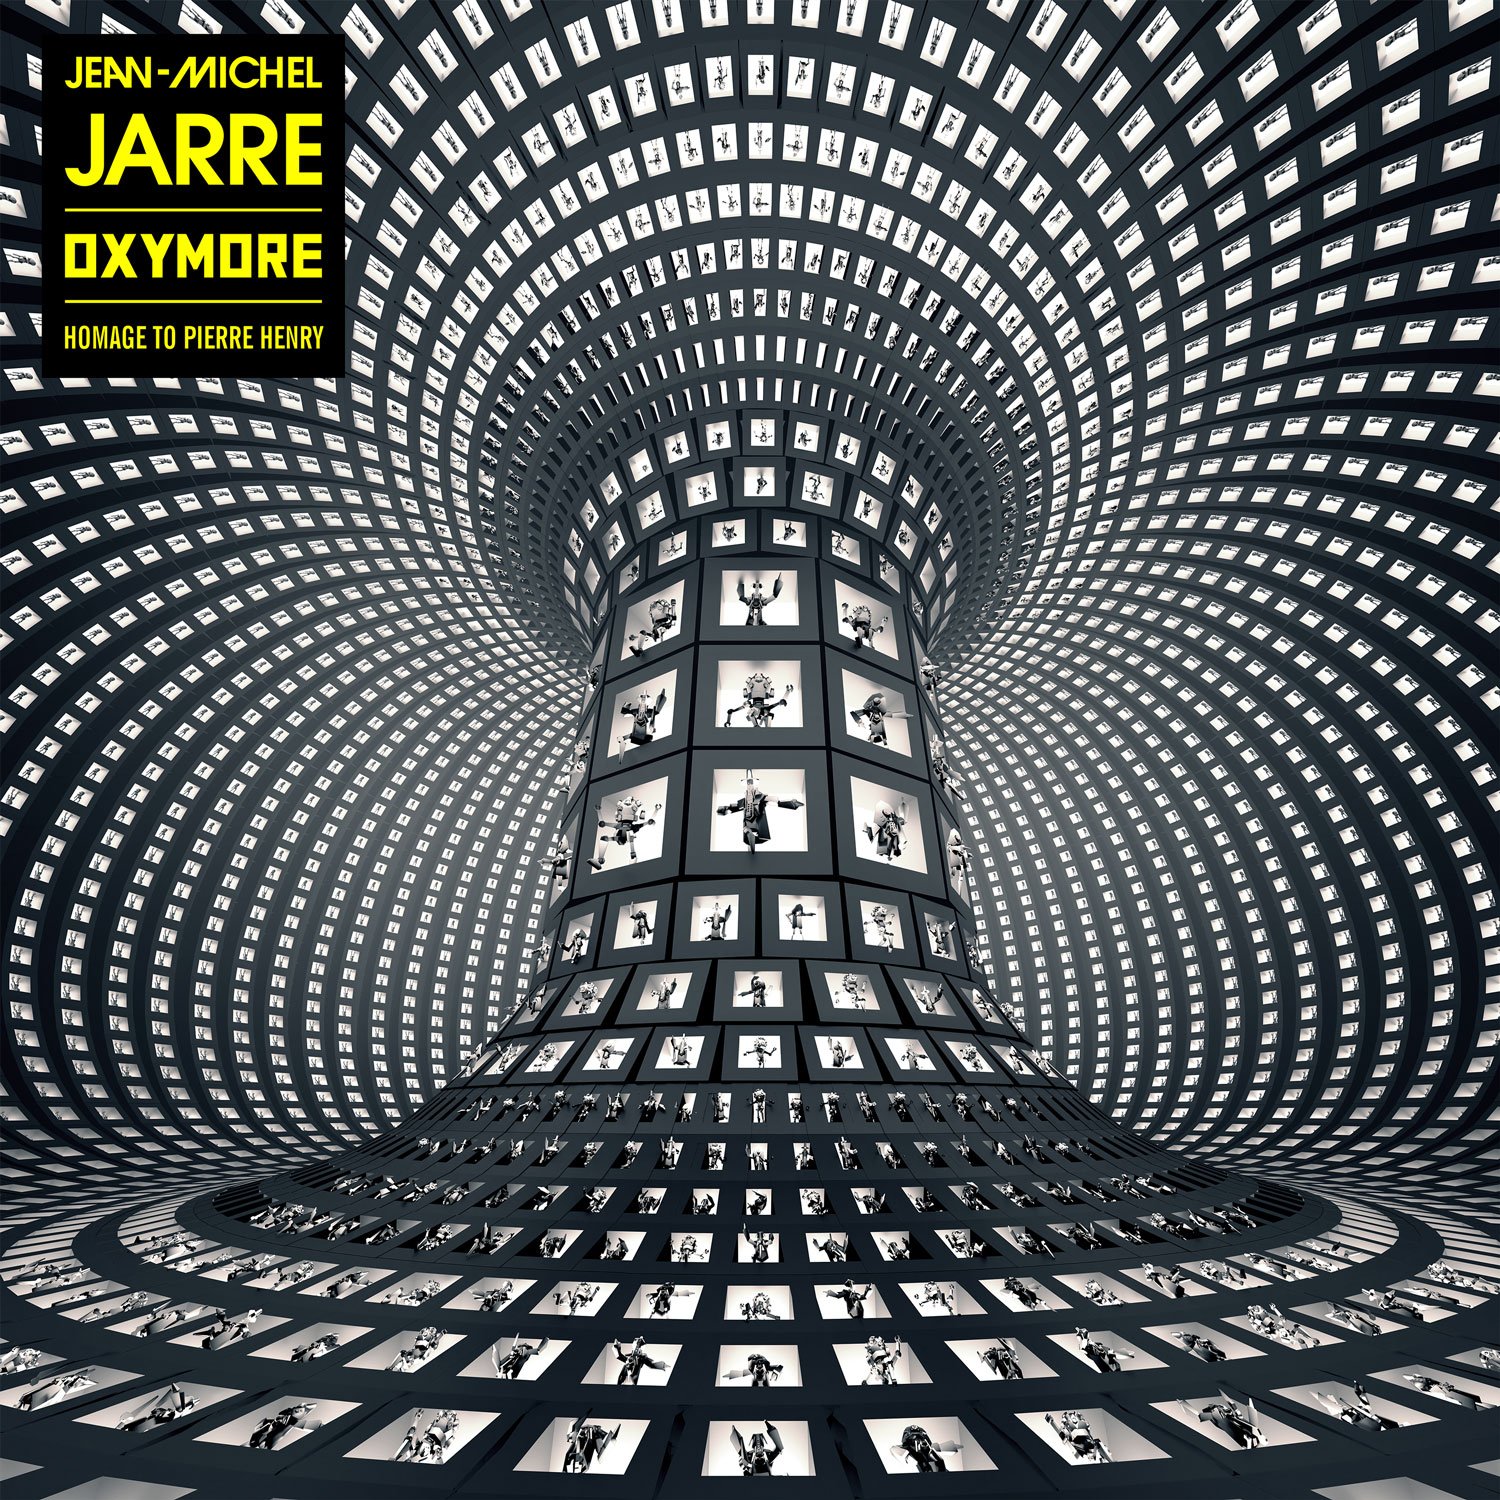 Jean-Michel Jarre "Oxymore" (Sony)